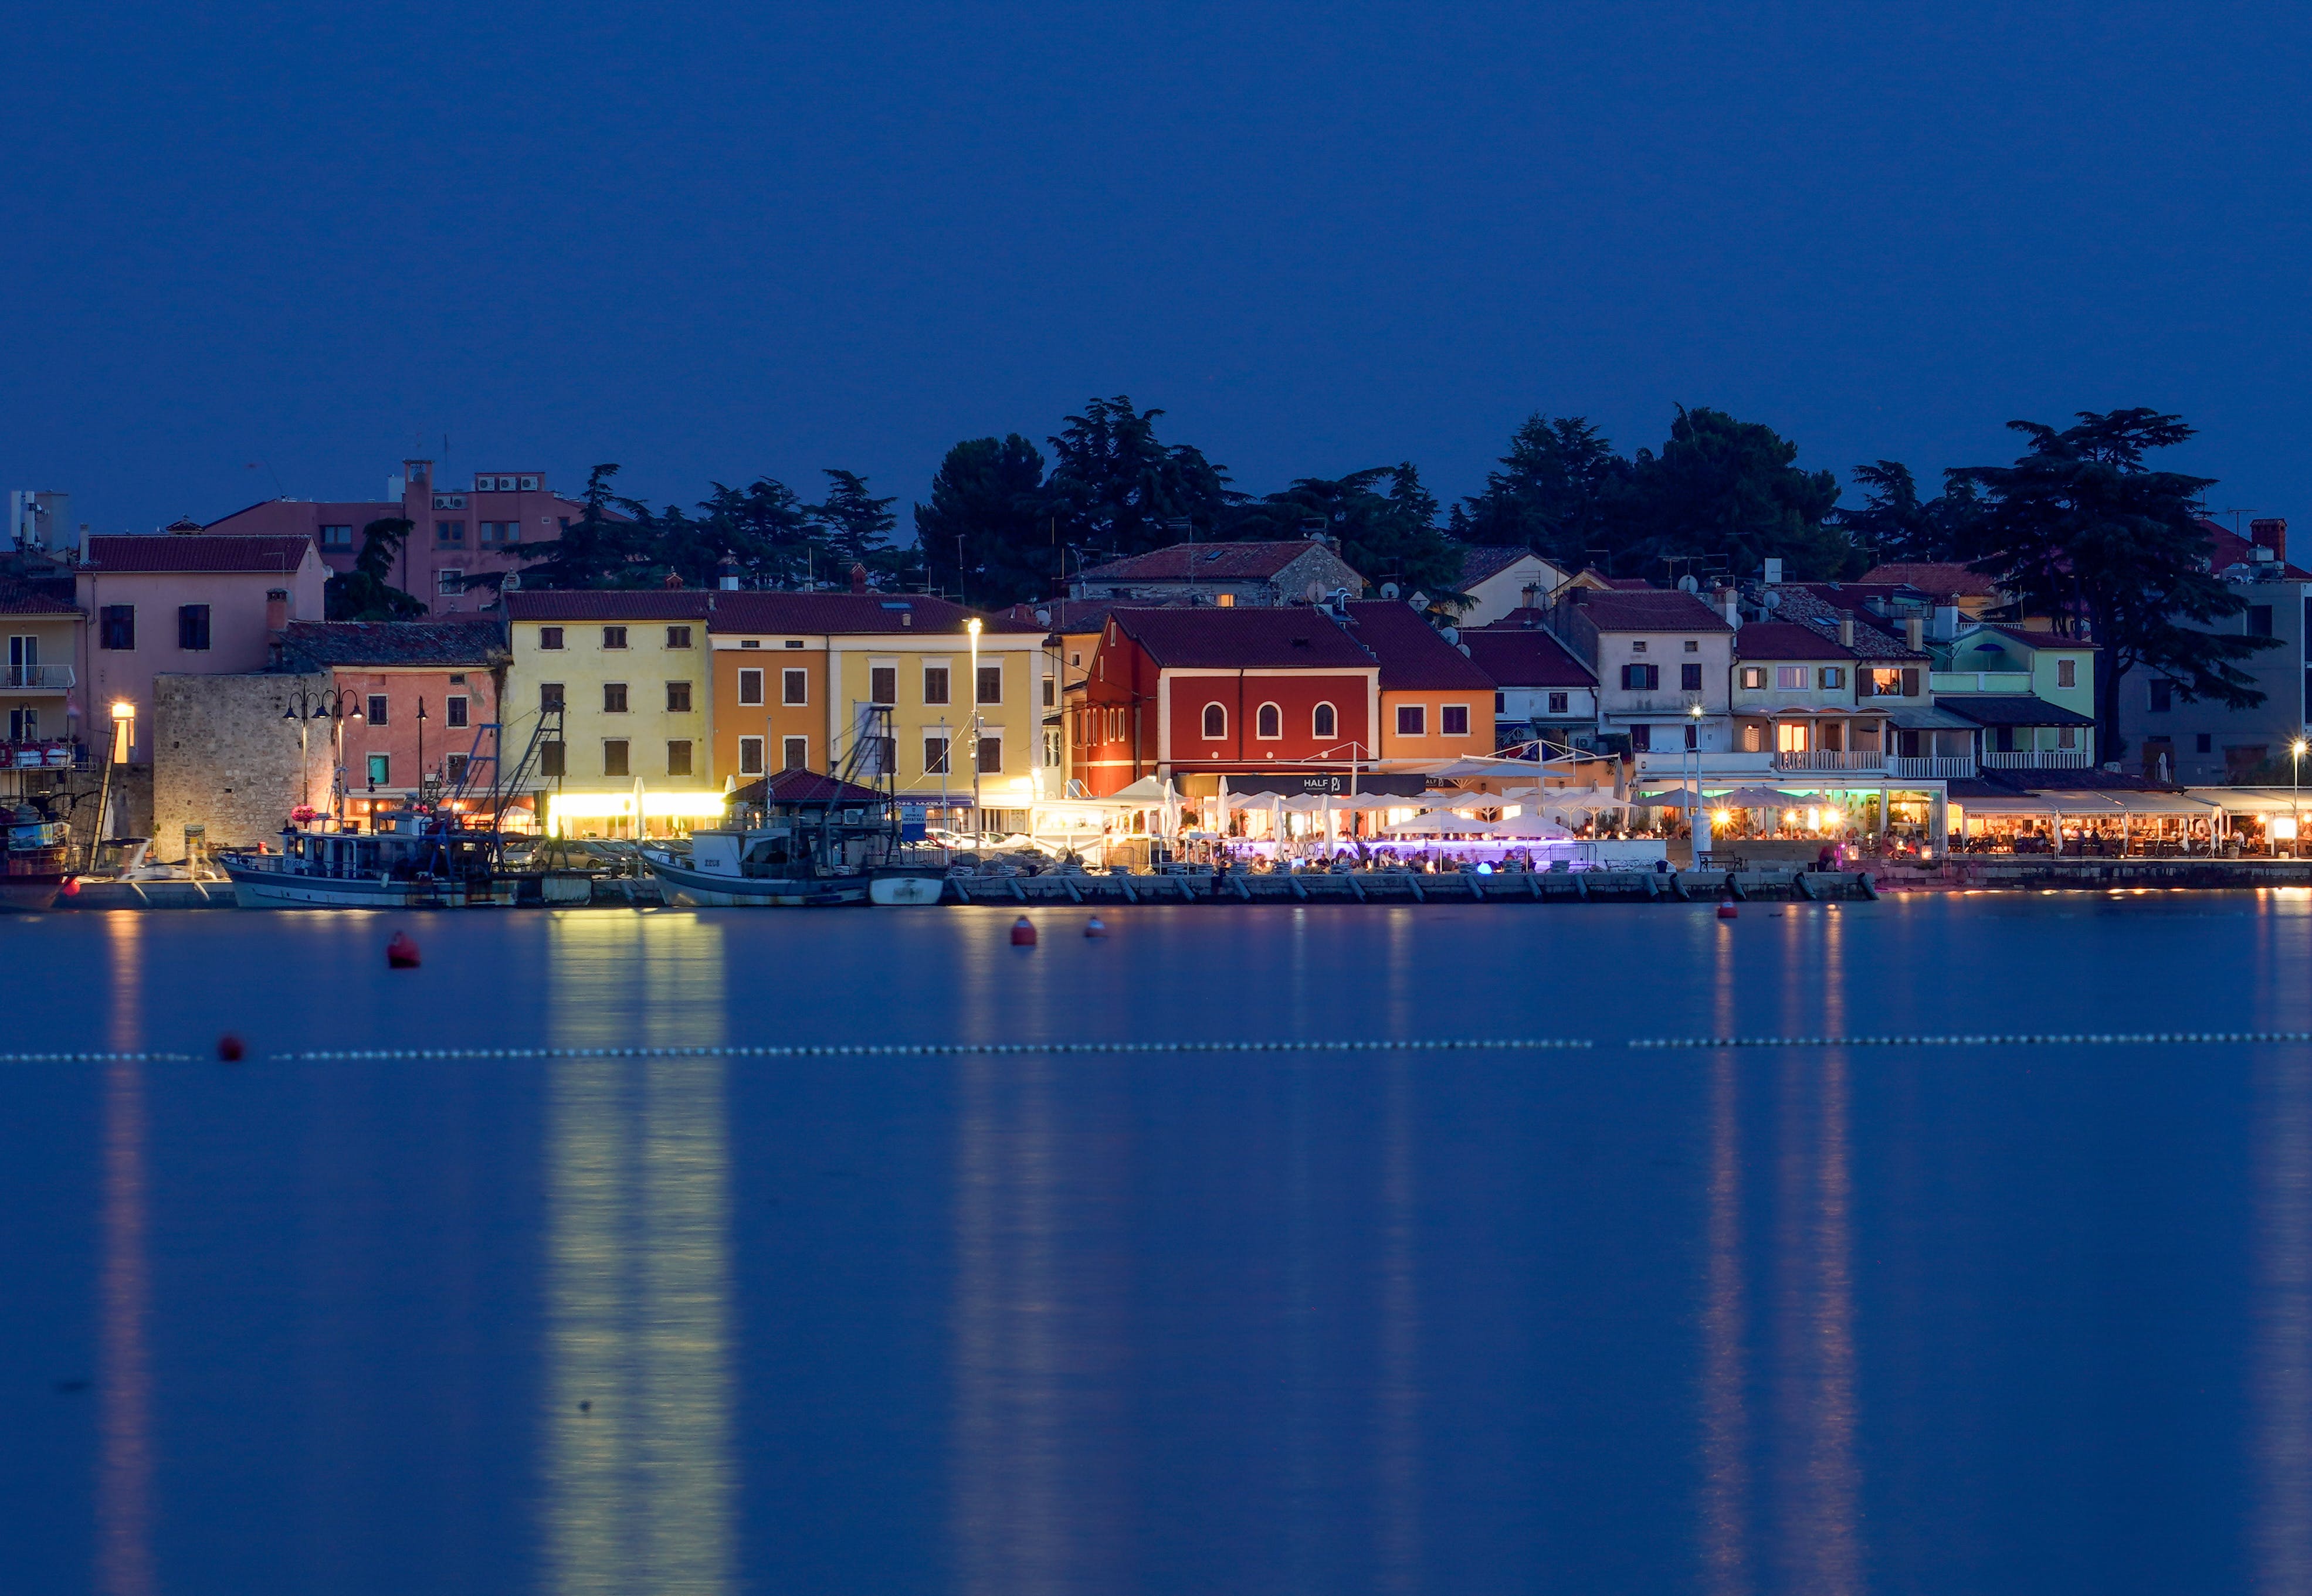 Hrvatski otoci ističu se ljepotom